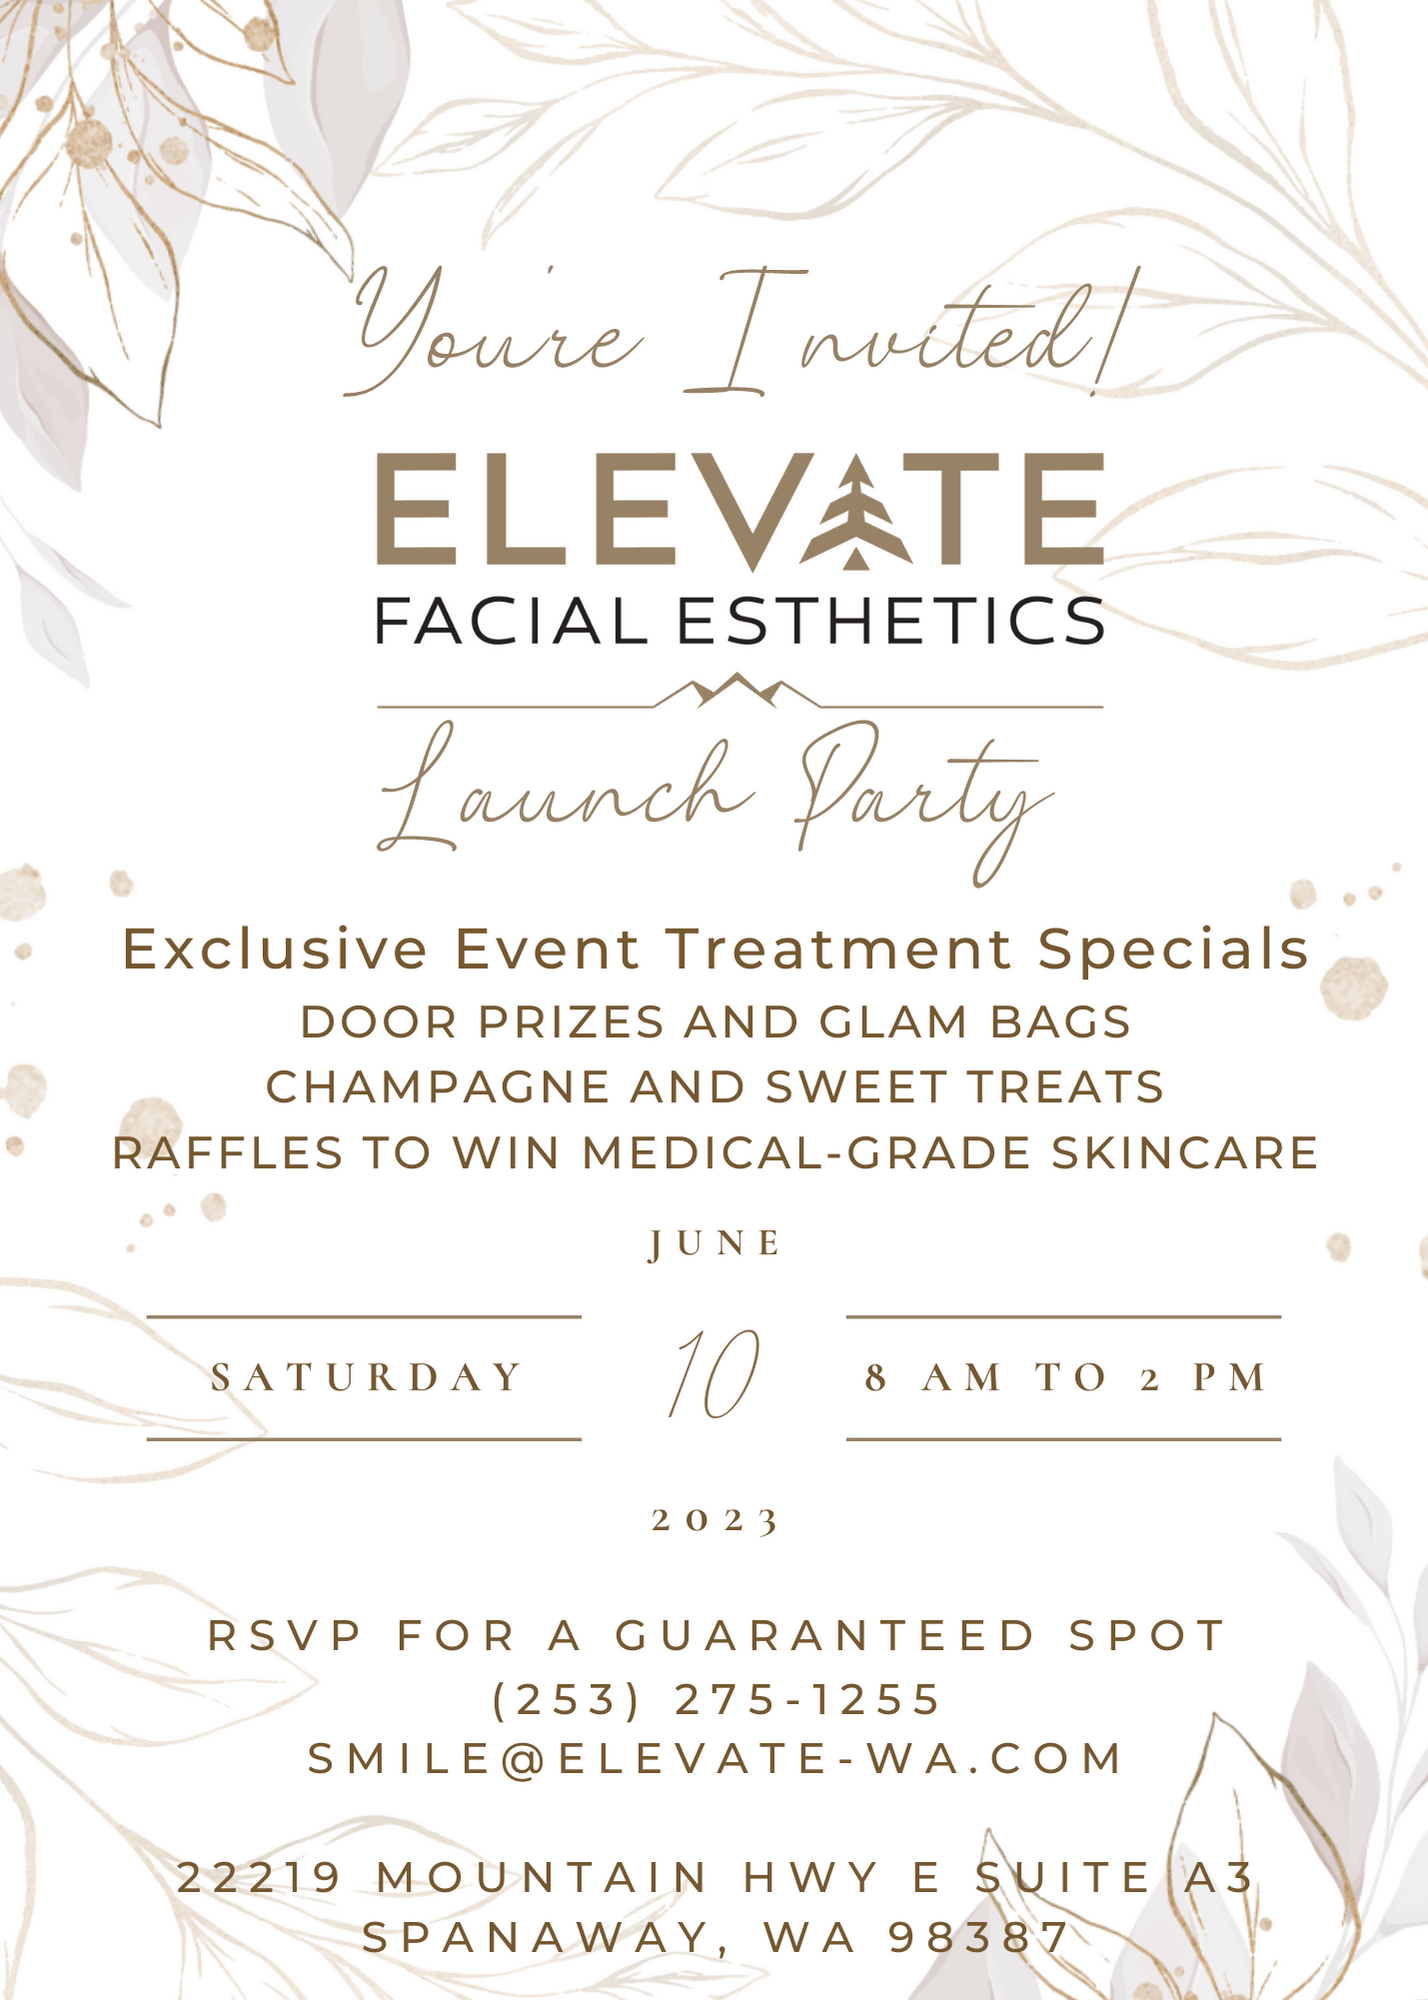 Elevate Facial Esthetics launch party